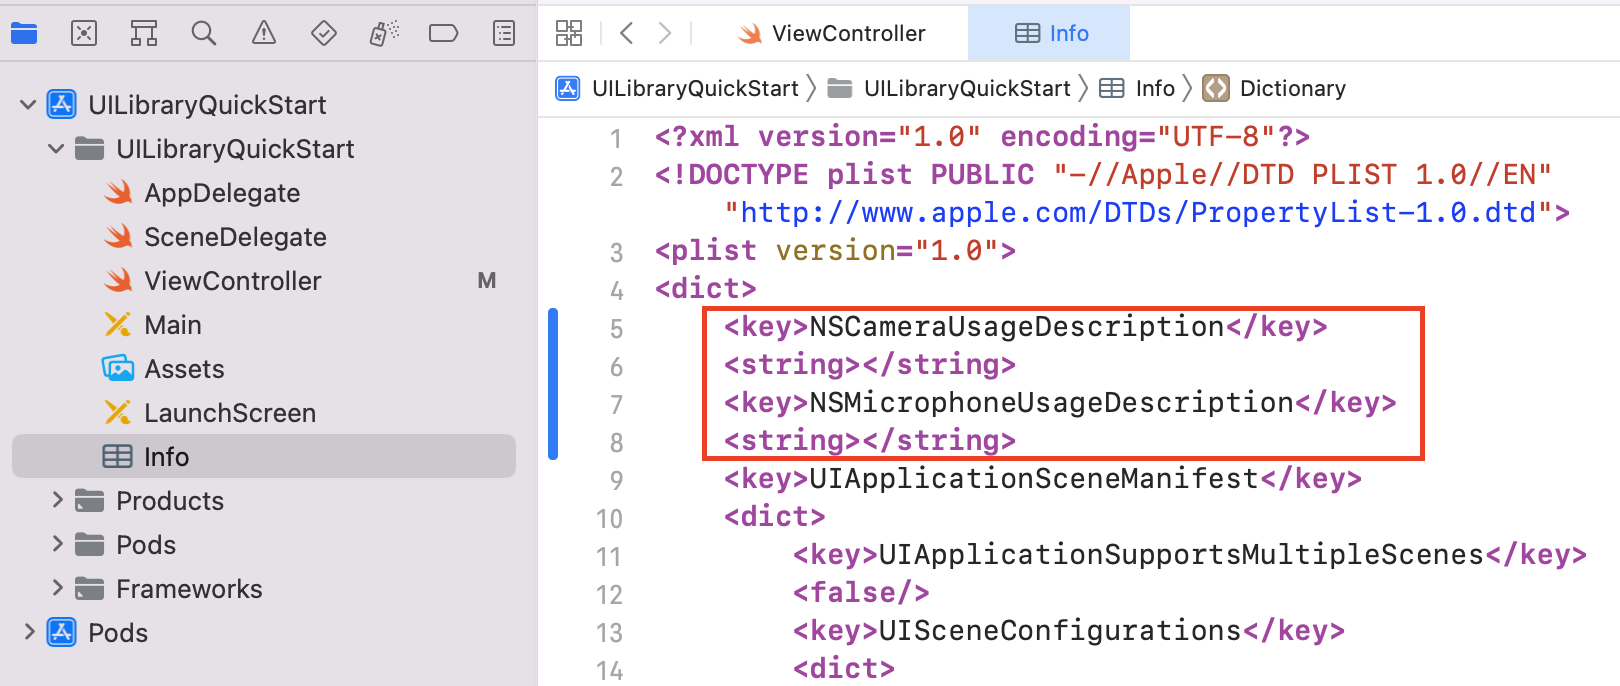 Xcode dosyasındaki bilgi plist kaynak kodunun bir örneğini gösteren ekran görüntüsü.